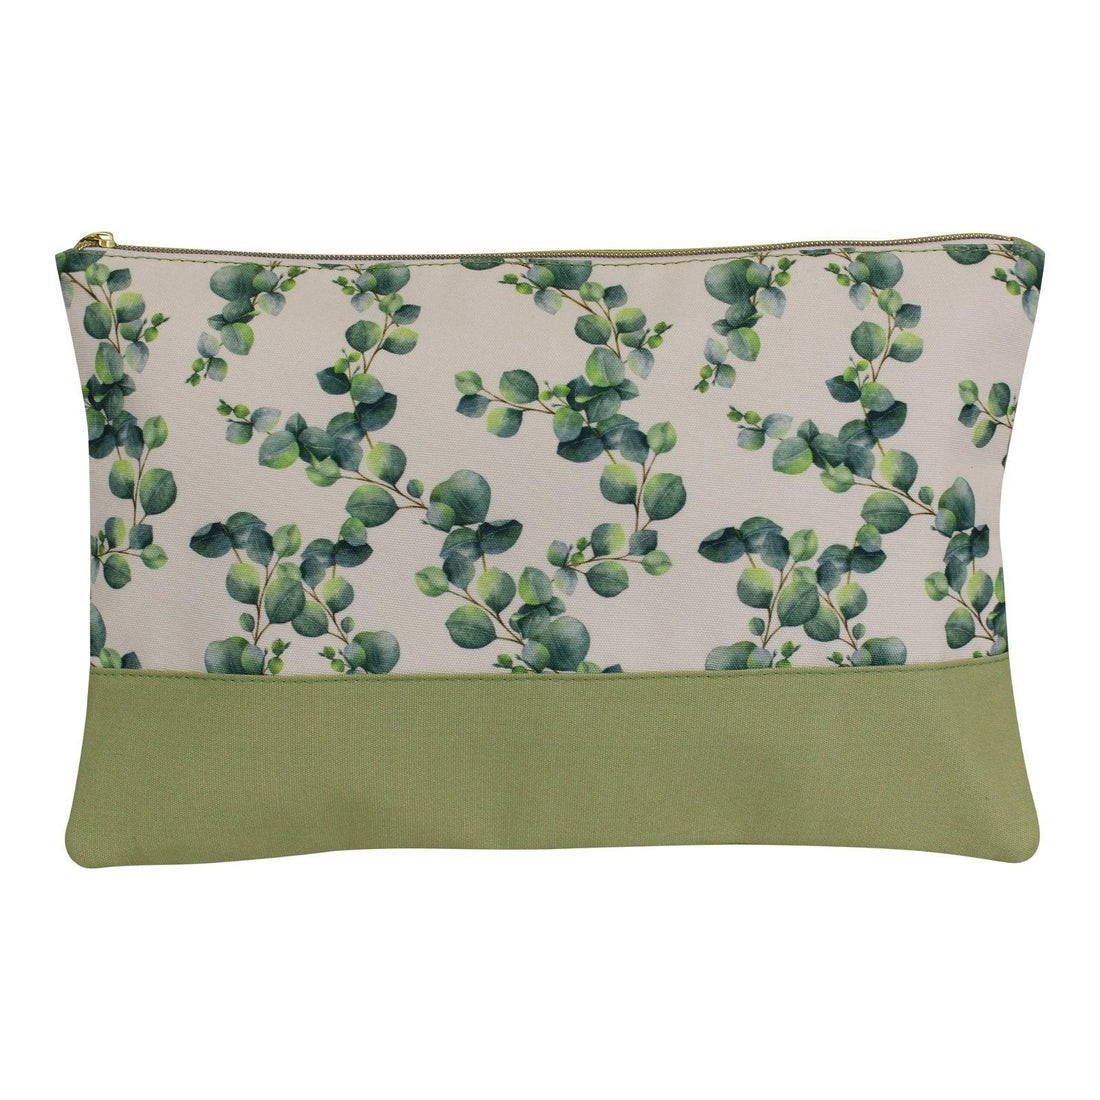 Eucalyptus Toiletries Bag 35x24cm - £18.99 - Throw Pillows 